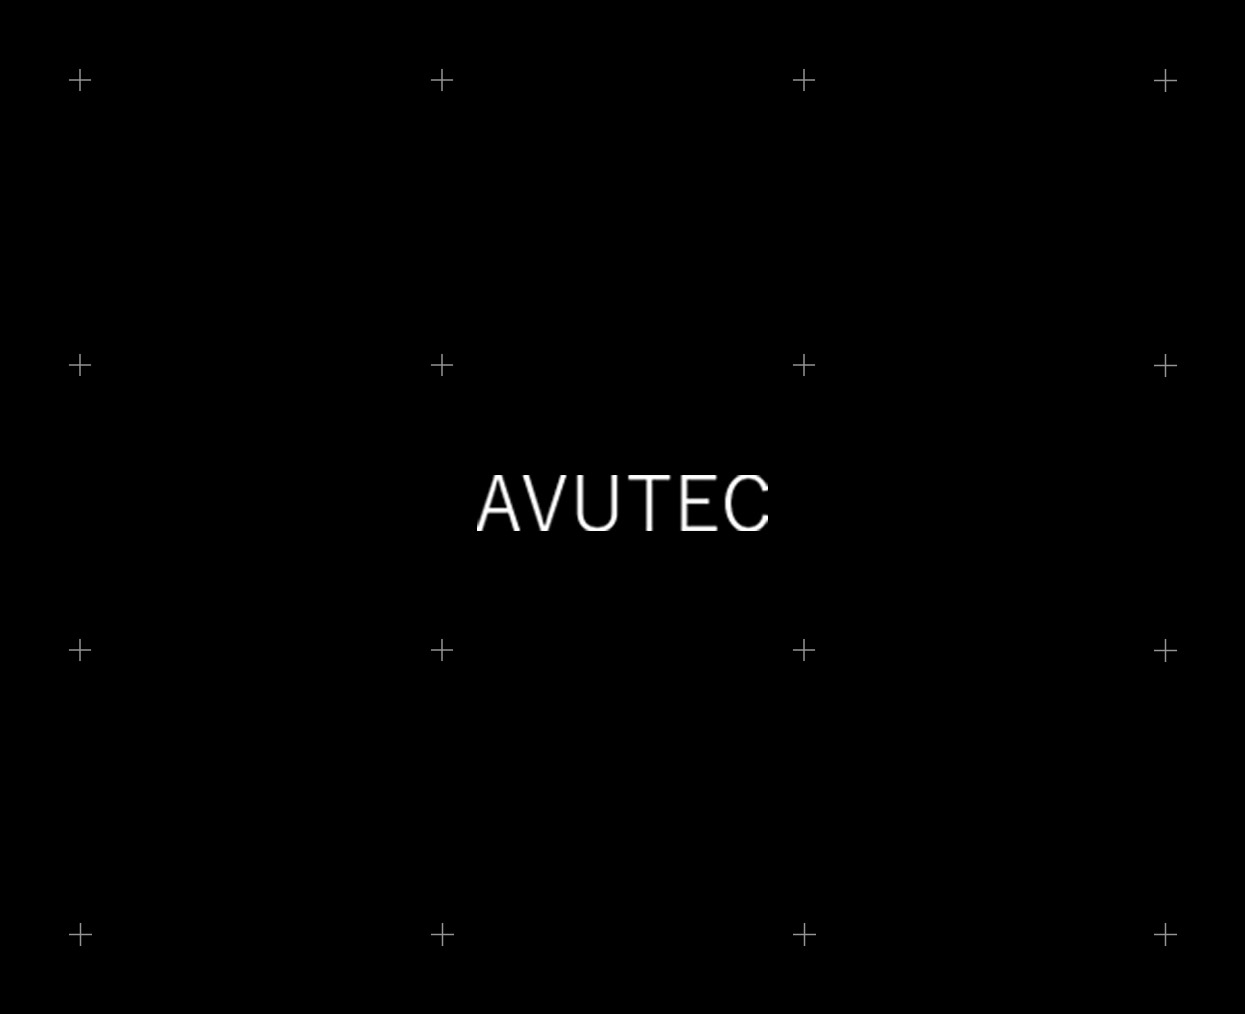 Avutec_830x66